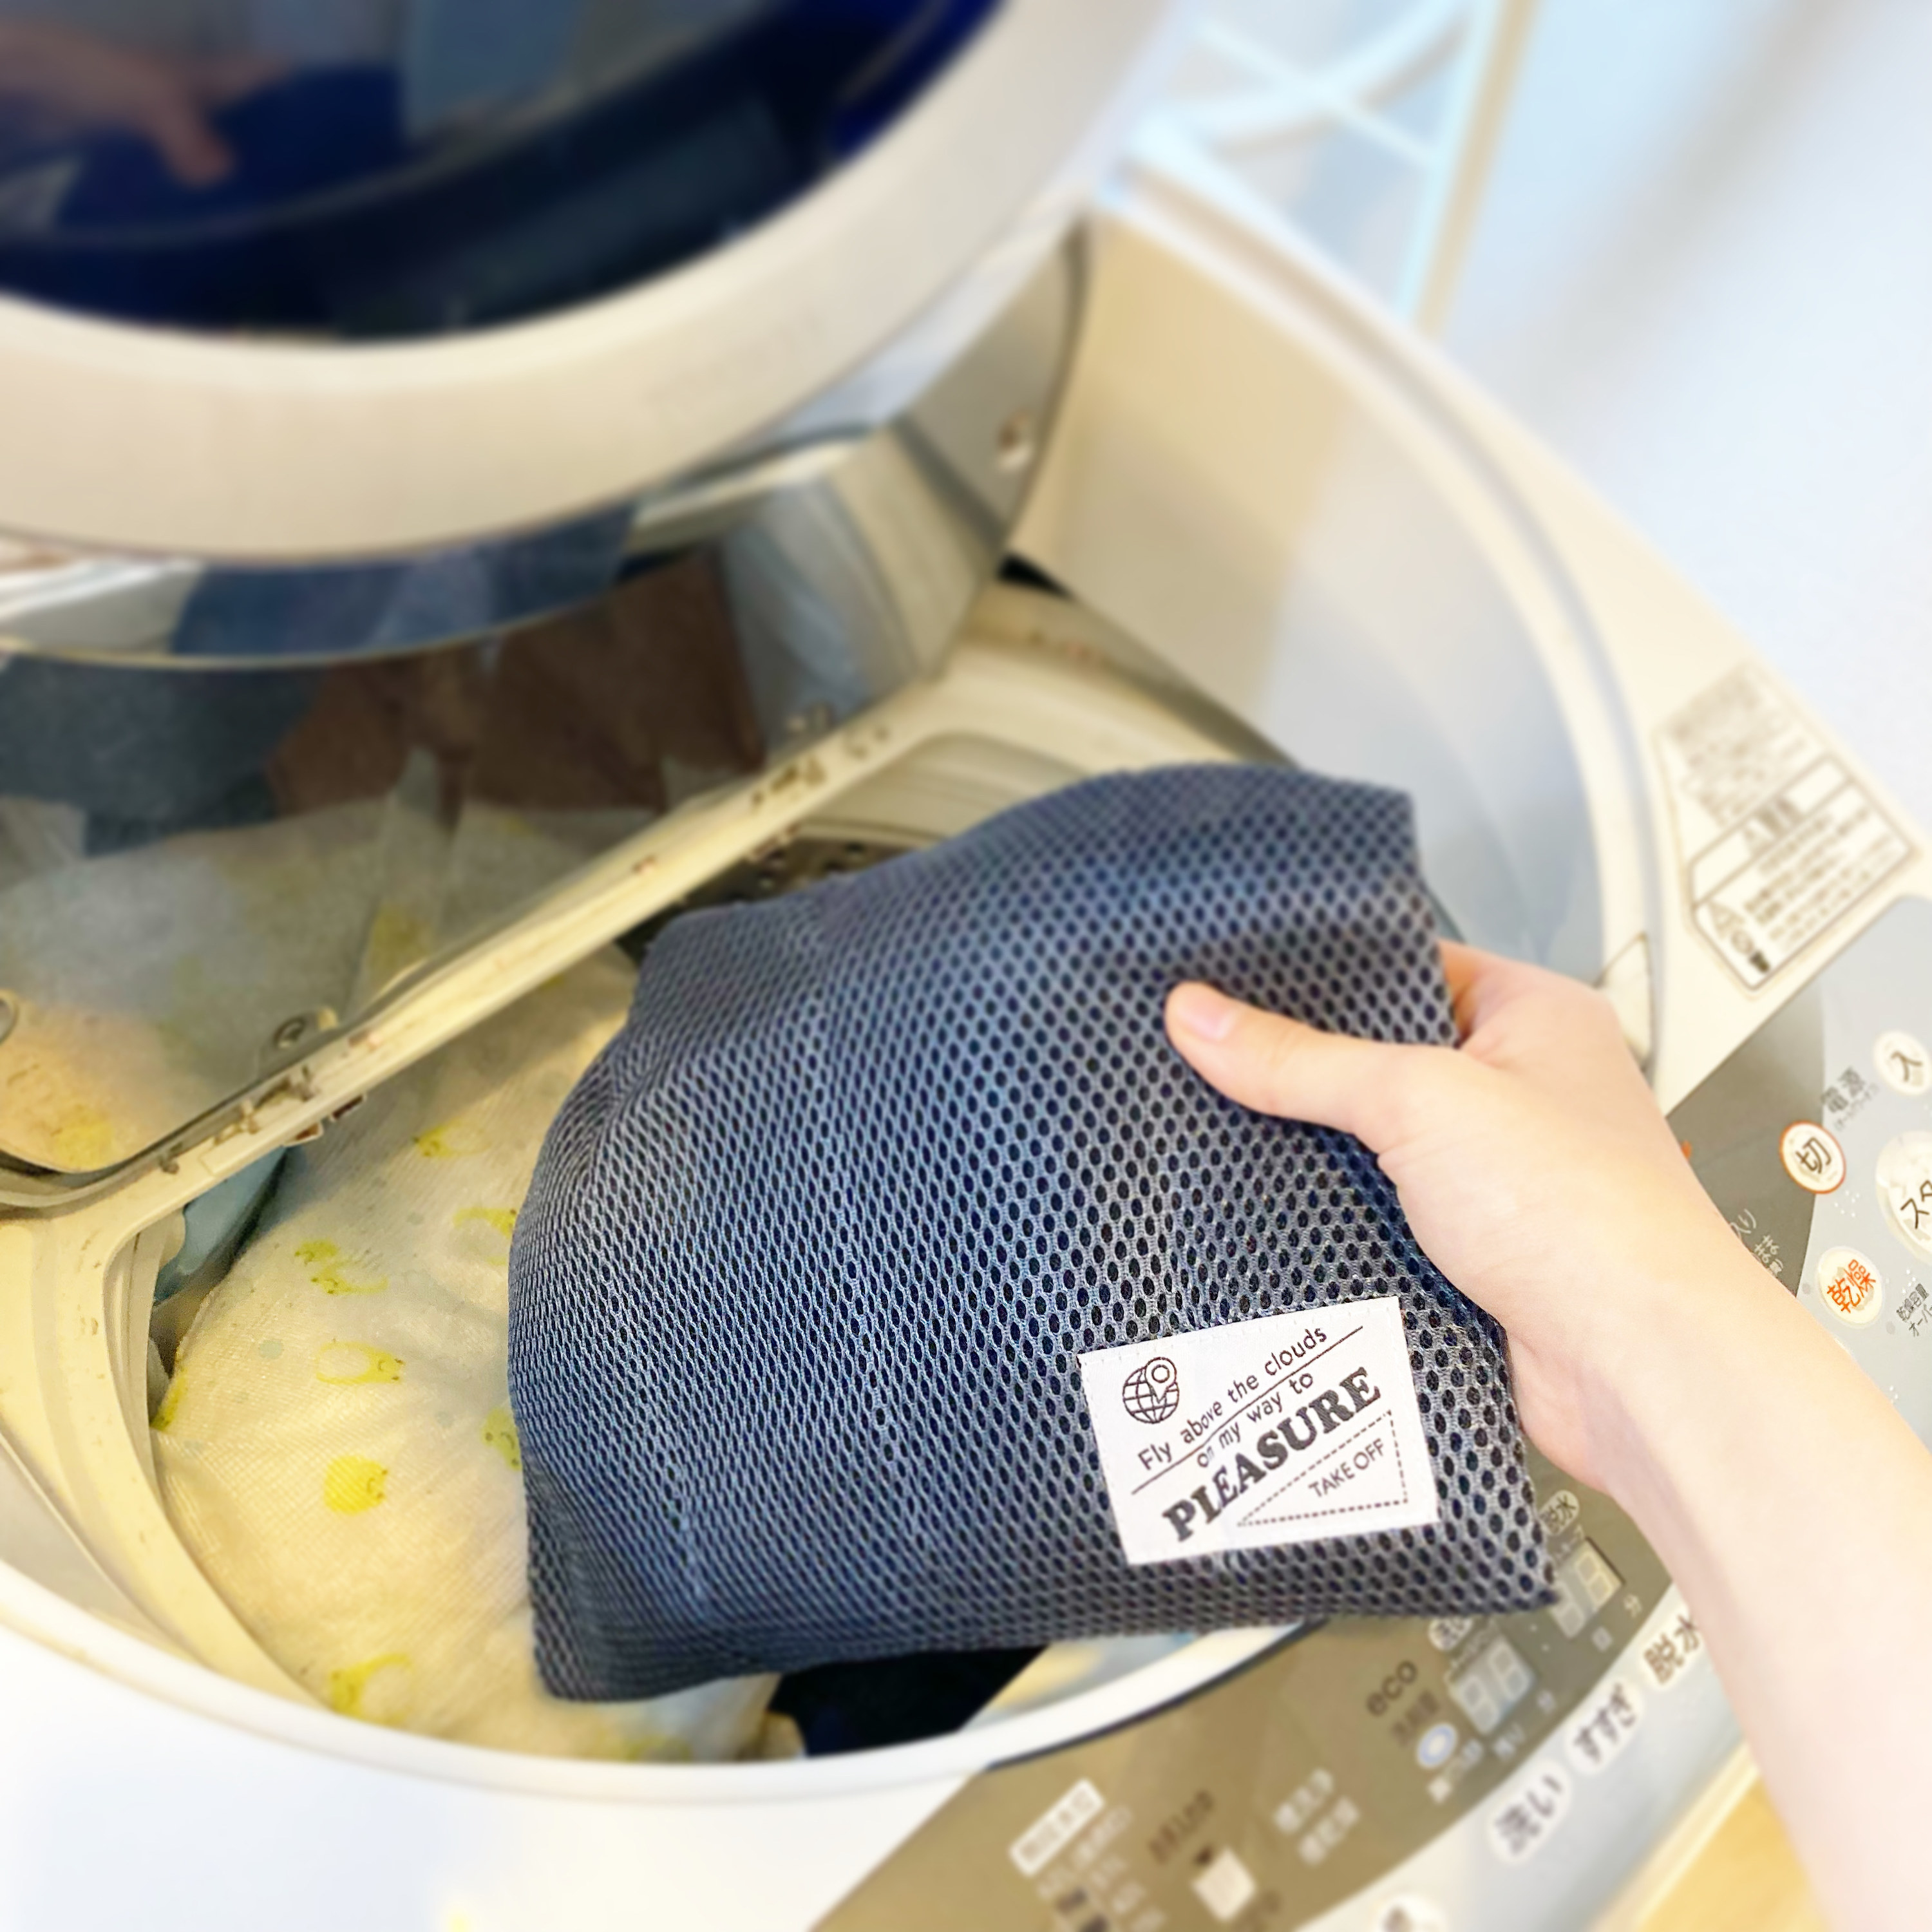 DAISO（ダイソー）の便利アイテム「旅する洗濯ネット（ダブルメッシュ、巾着型、30cm×35cm×1cm、BKNV）」